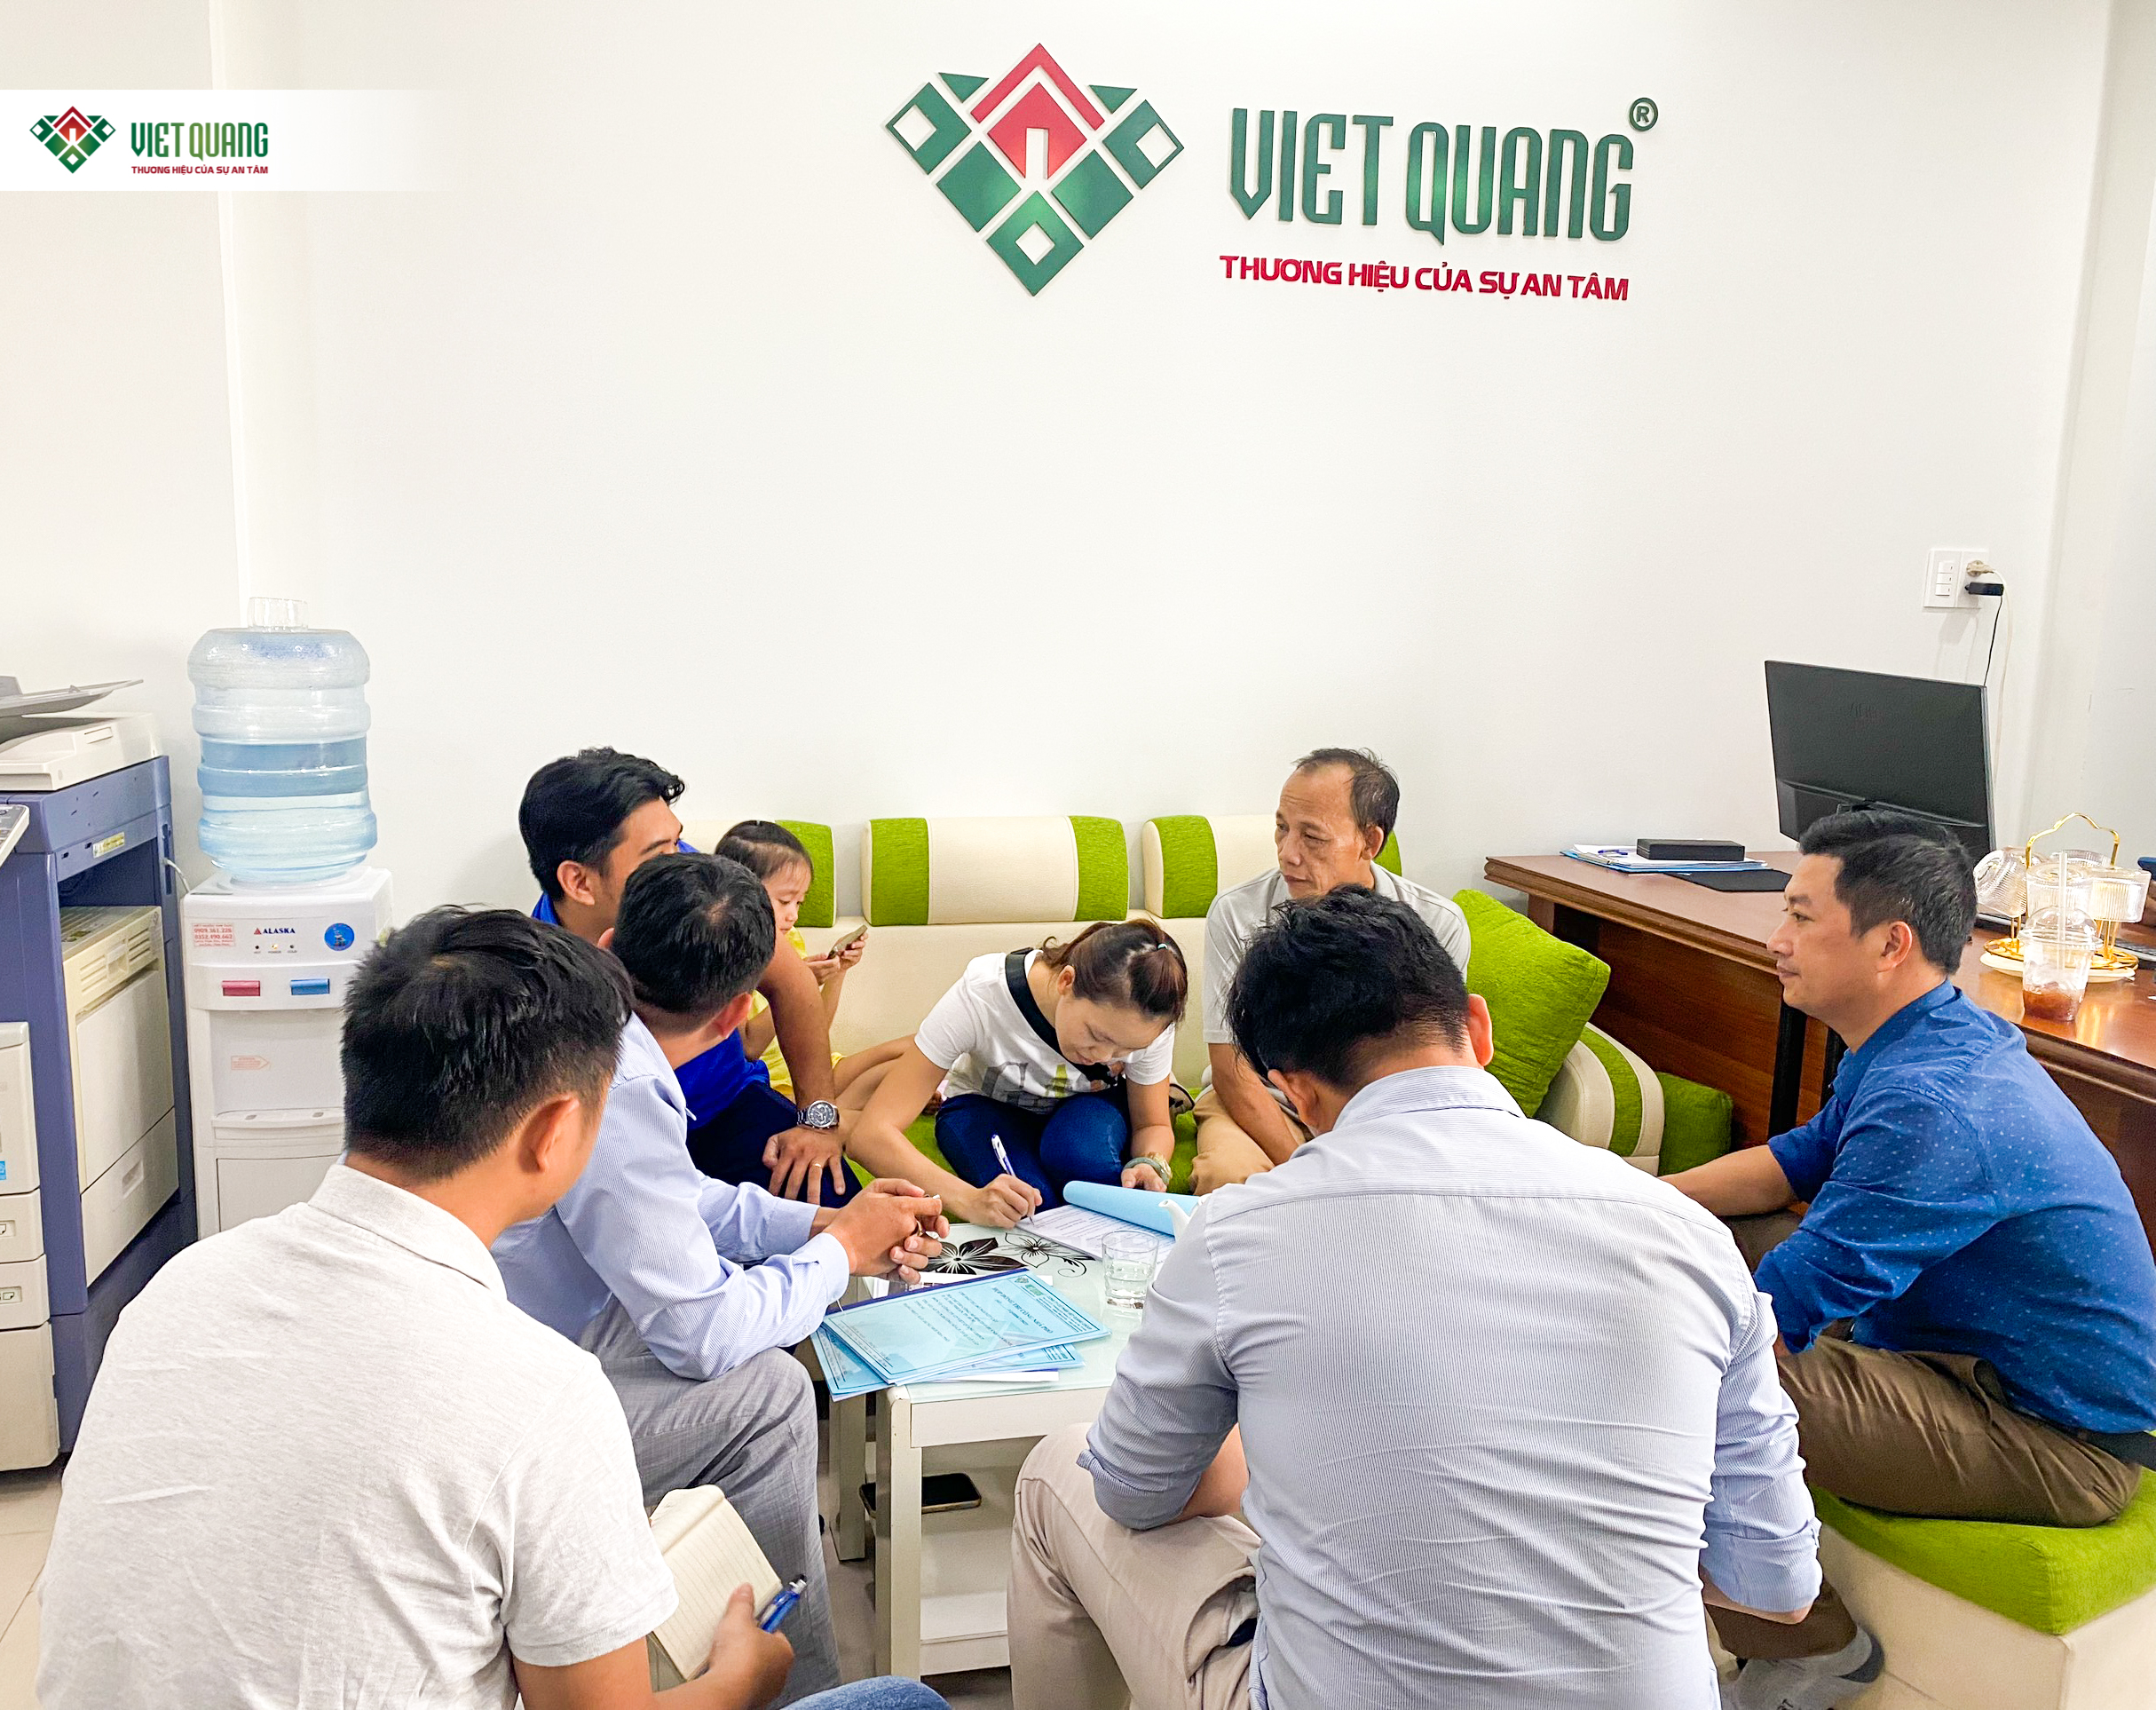 Hình lưu niệm trong buổi ký hợp đồng xây nhà trọn gói chị Cát Quận Phú Nhuận